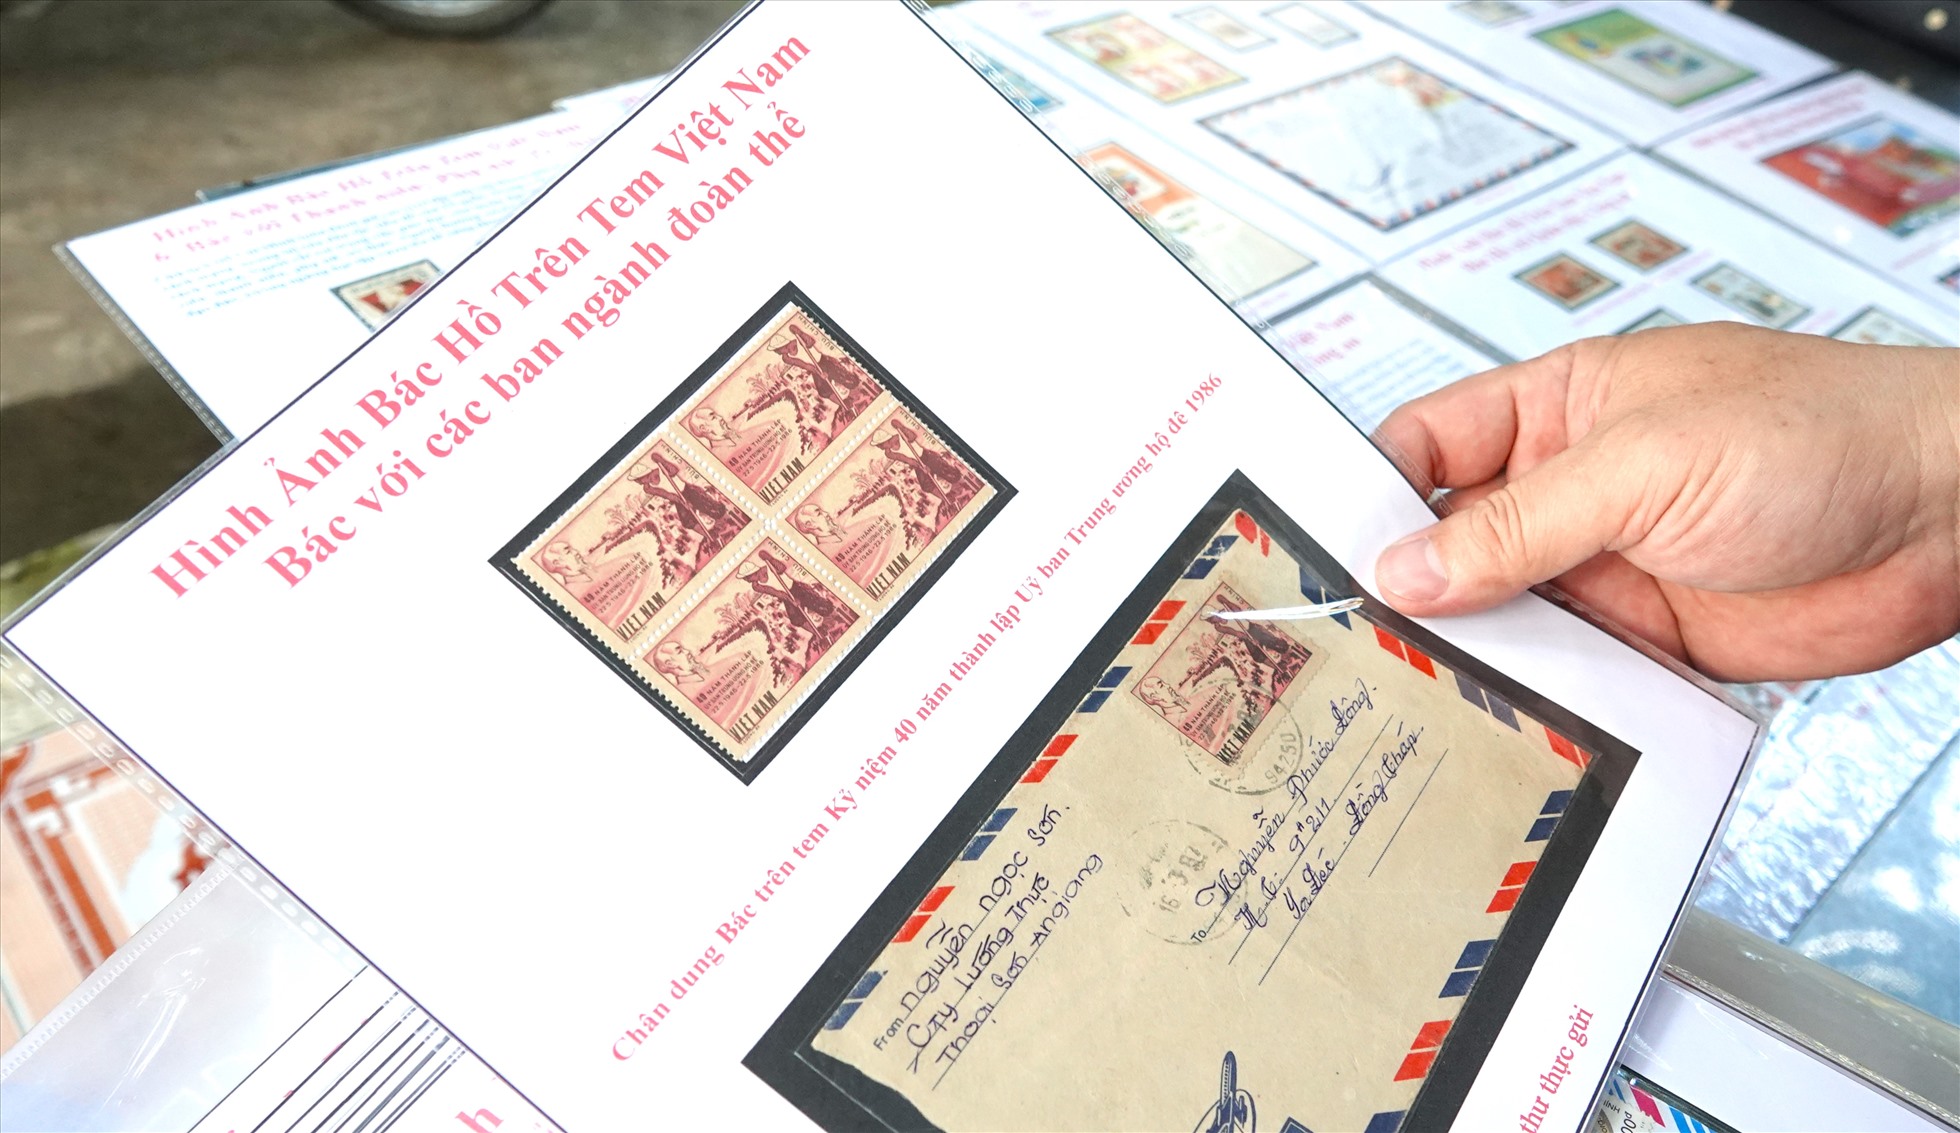 Với thầy Bình, ấn tượng nhất trong bộ sưu tập tem của mình là bộ tem về Đảng và Bác, bởi có hơn 100 mẫu tem được thầy sưu tập qua những kỳ Đại hội Đảng lần thứ IV đến lần thứ XIII nên cần thời gian dài để hoàn thiện chủ đề này.